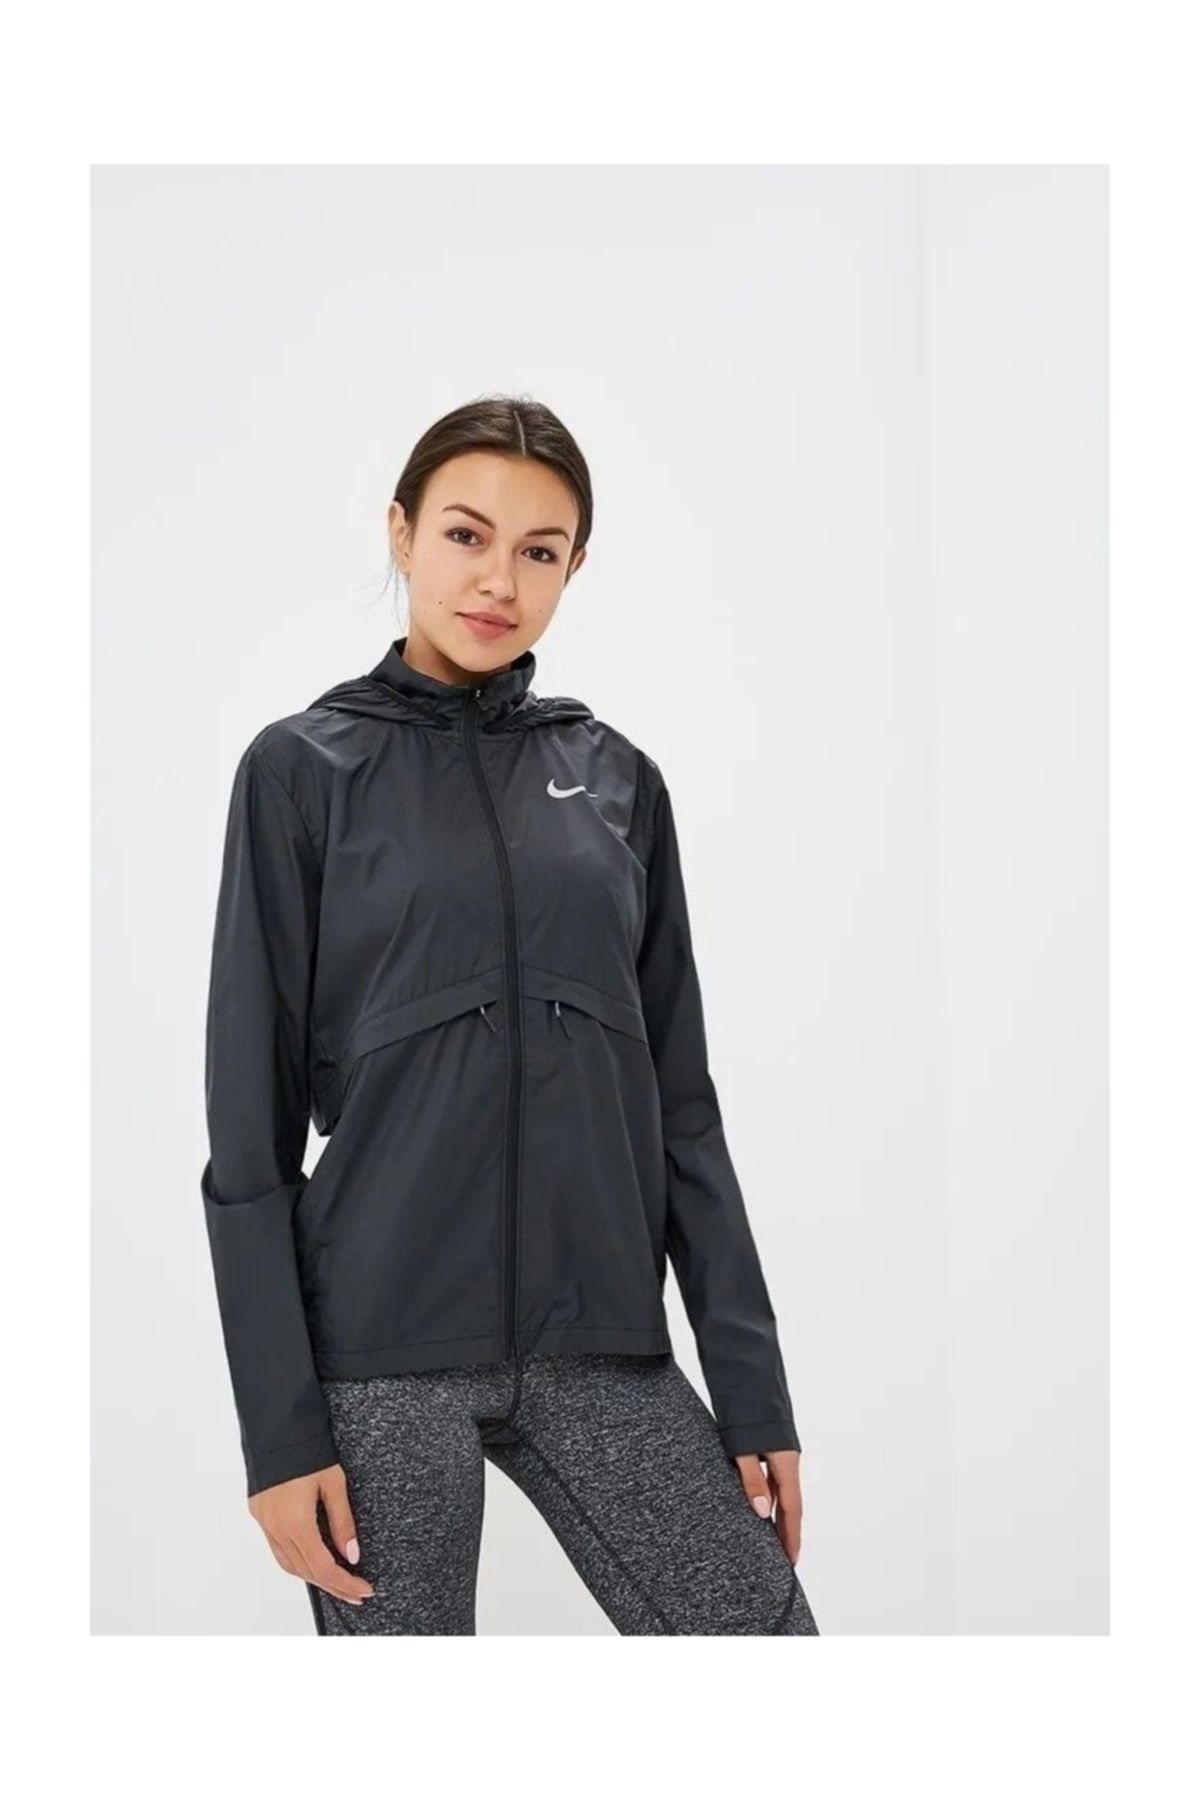 Nike Essential Kapüşonlu Kadın Koşu Ceketi